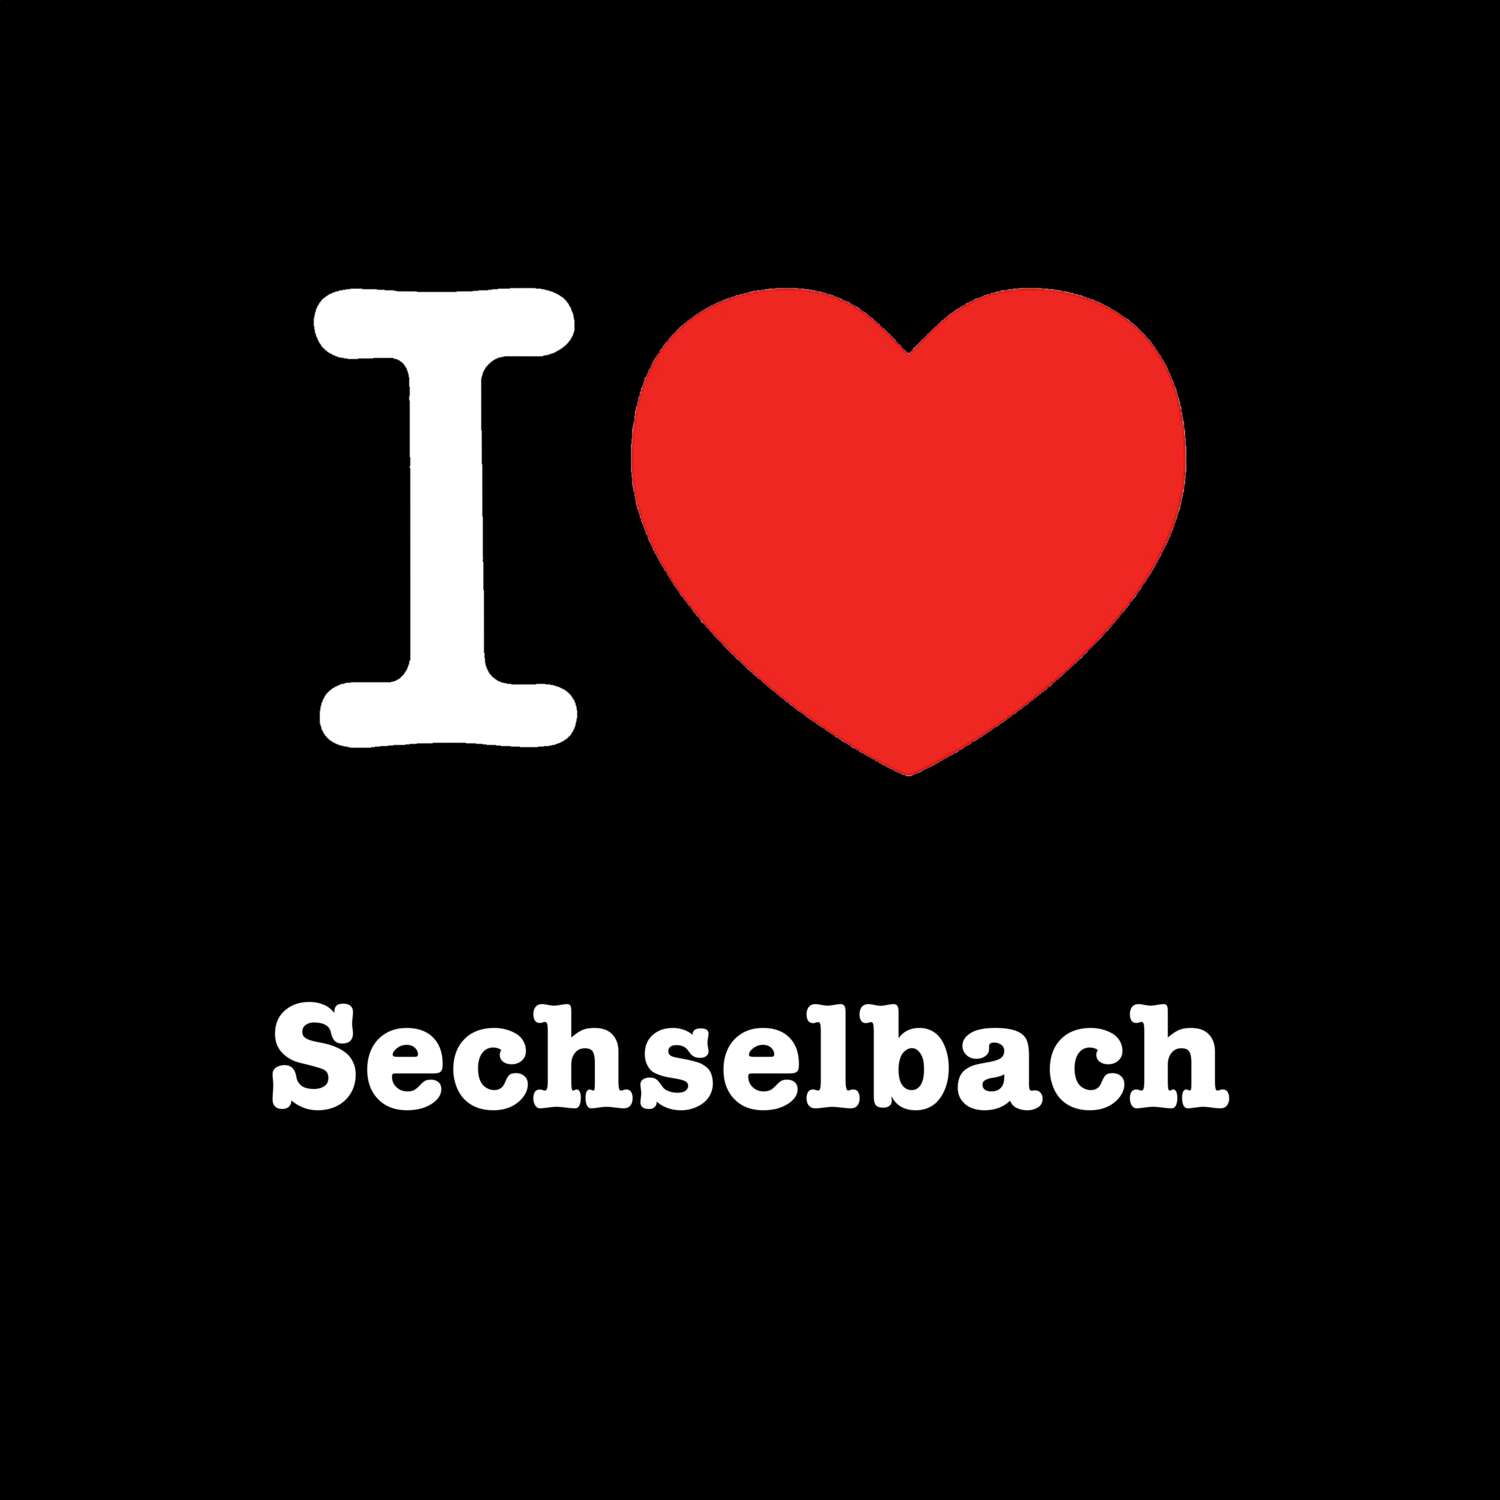 Sechselbach T-Shirt »I love«